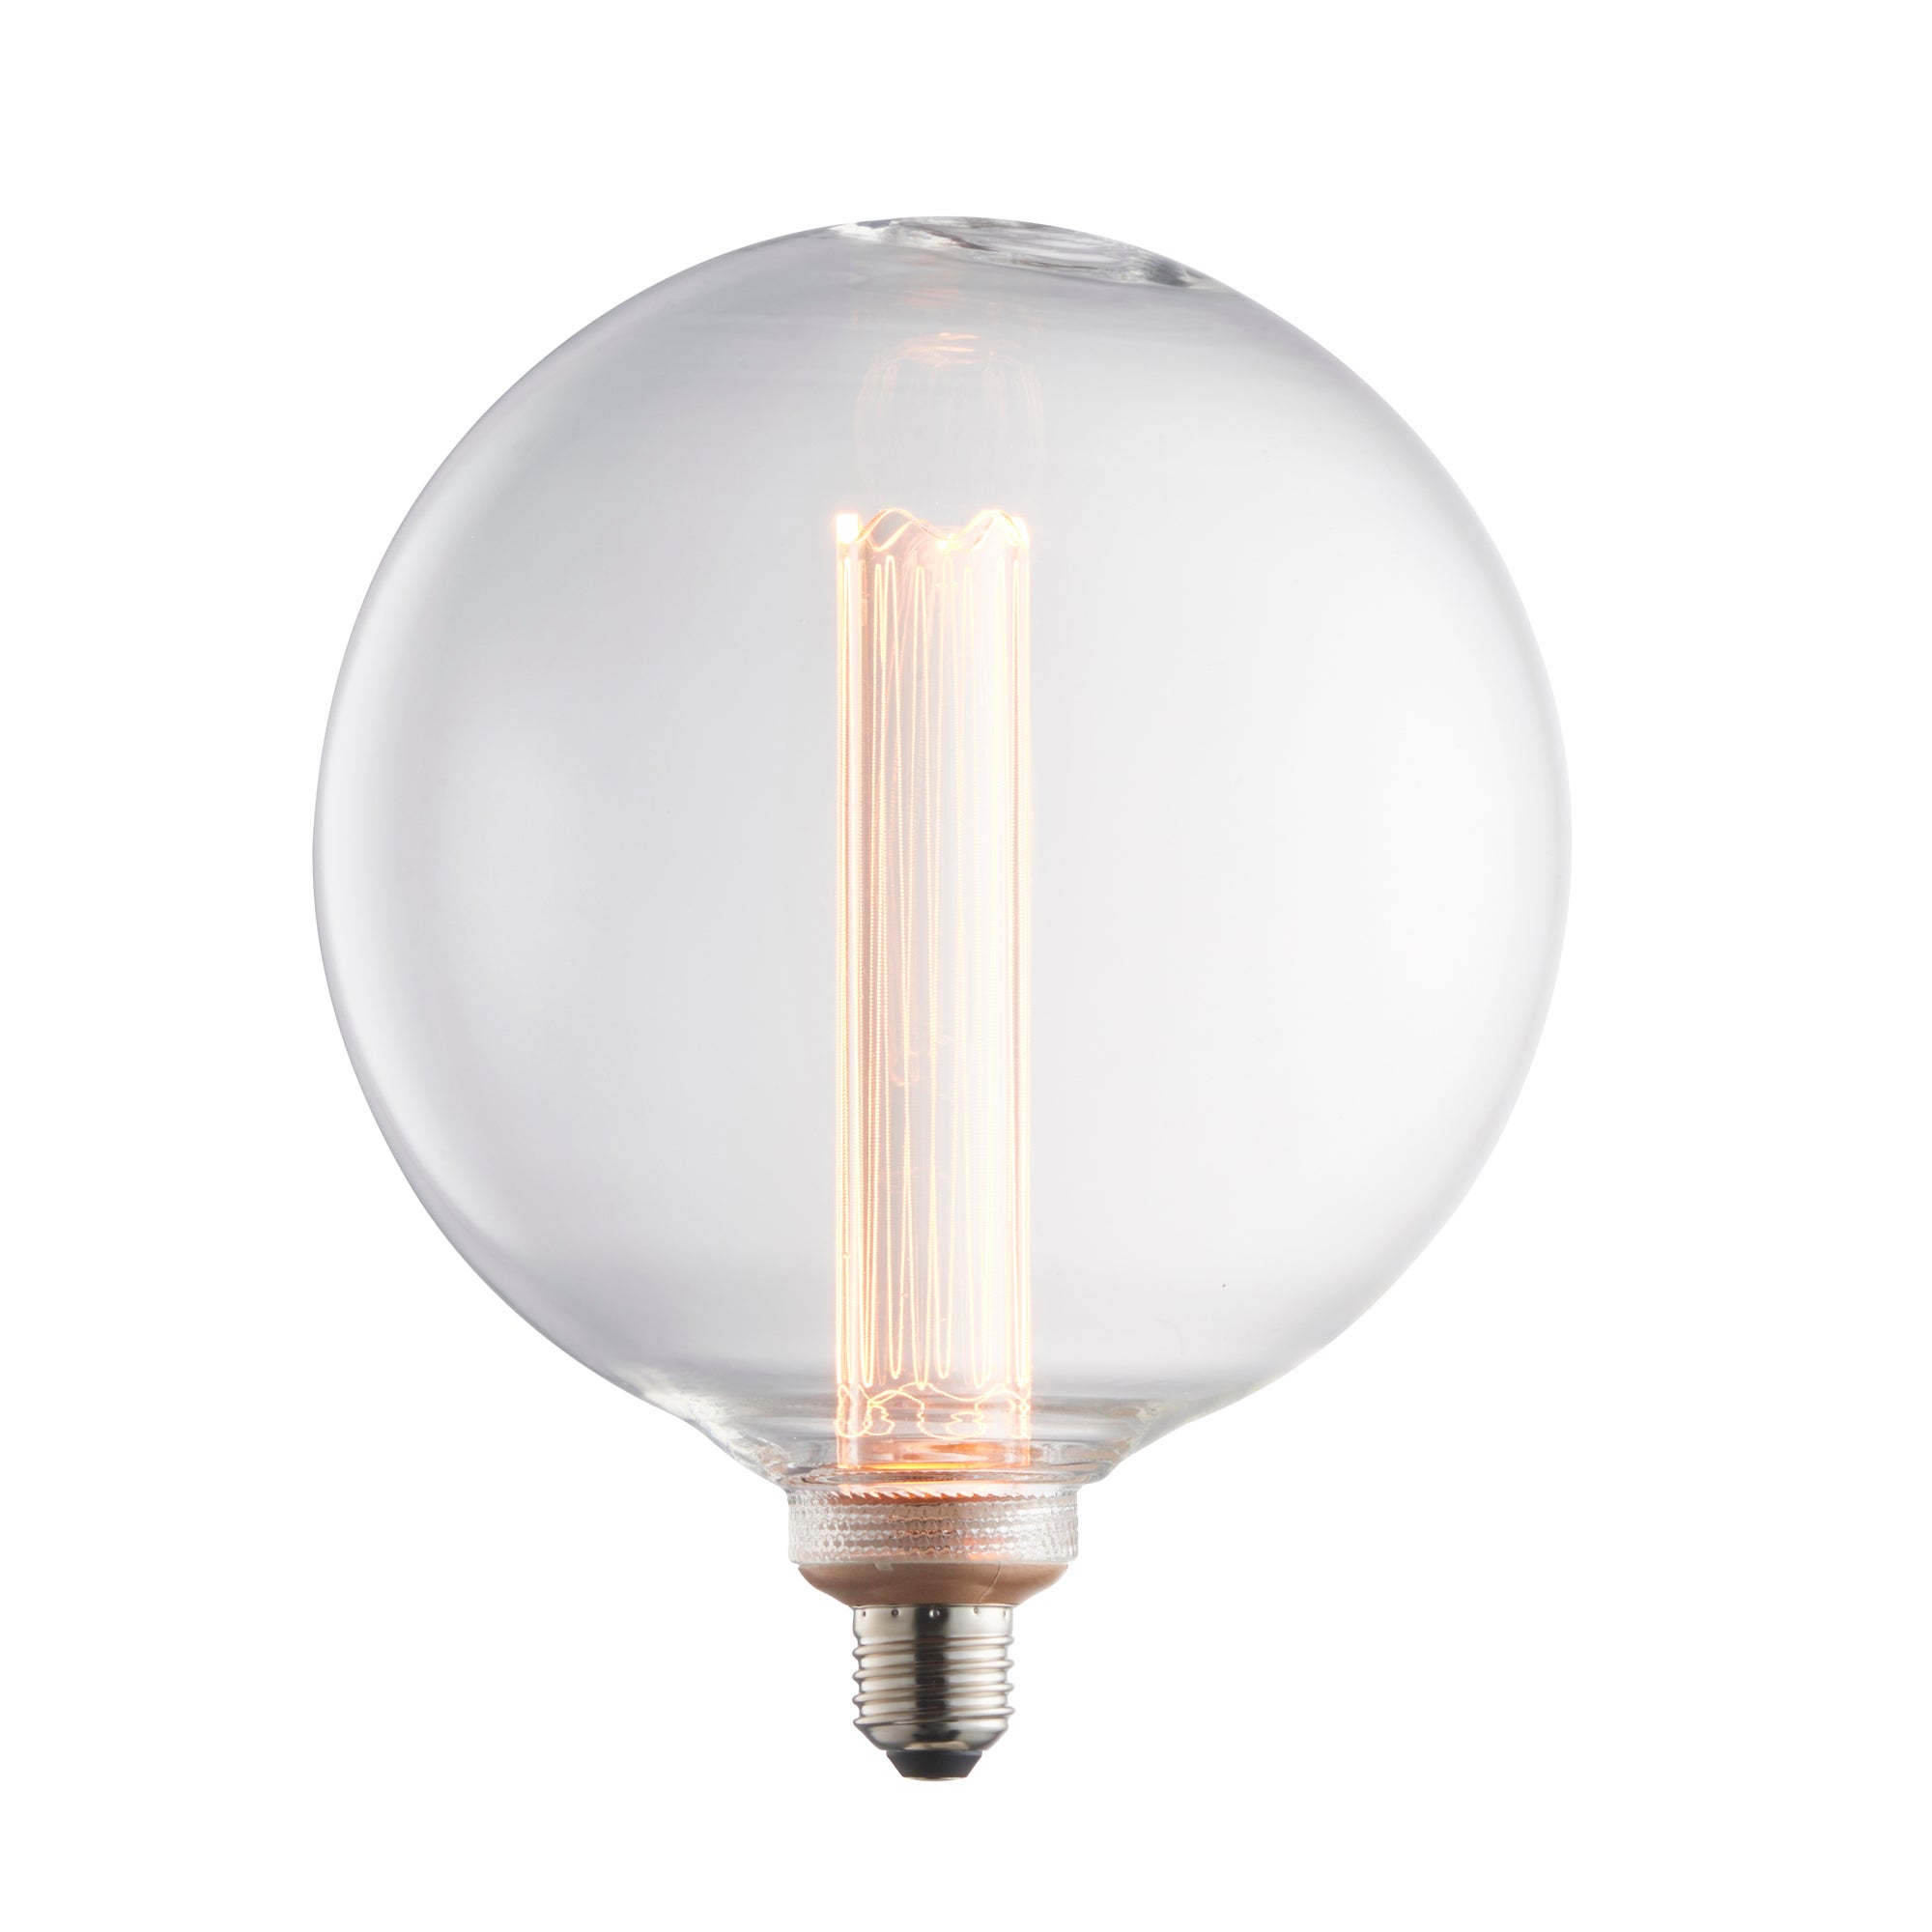 Vogue 2.8W ES LED Globe Bulb